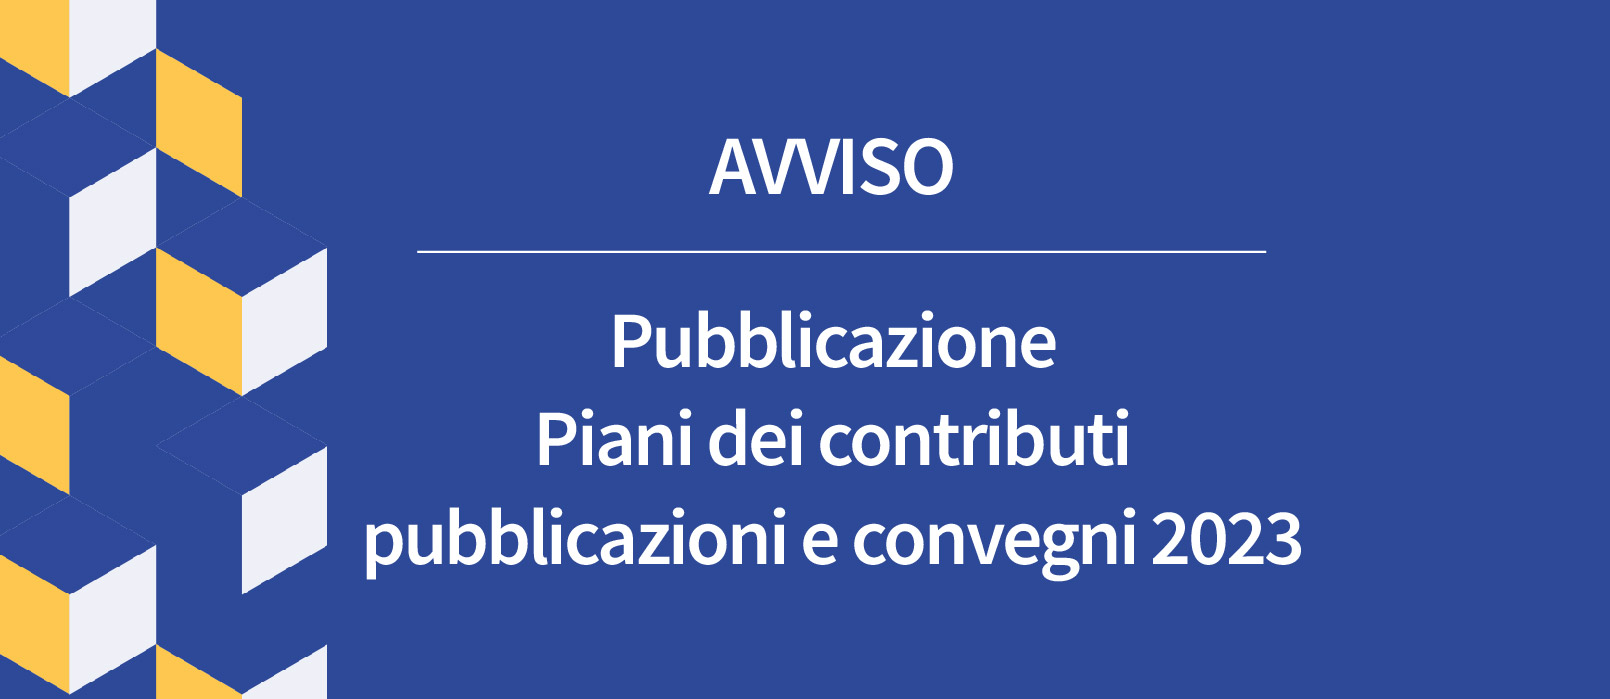 Avviso Pubblicazione Piani dei contributi per pubblicazioni e convegni 2023